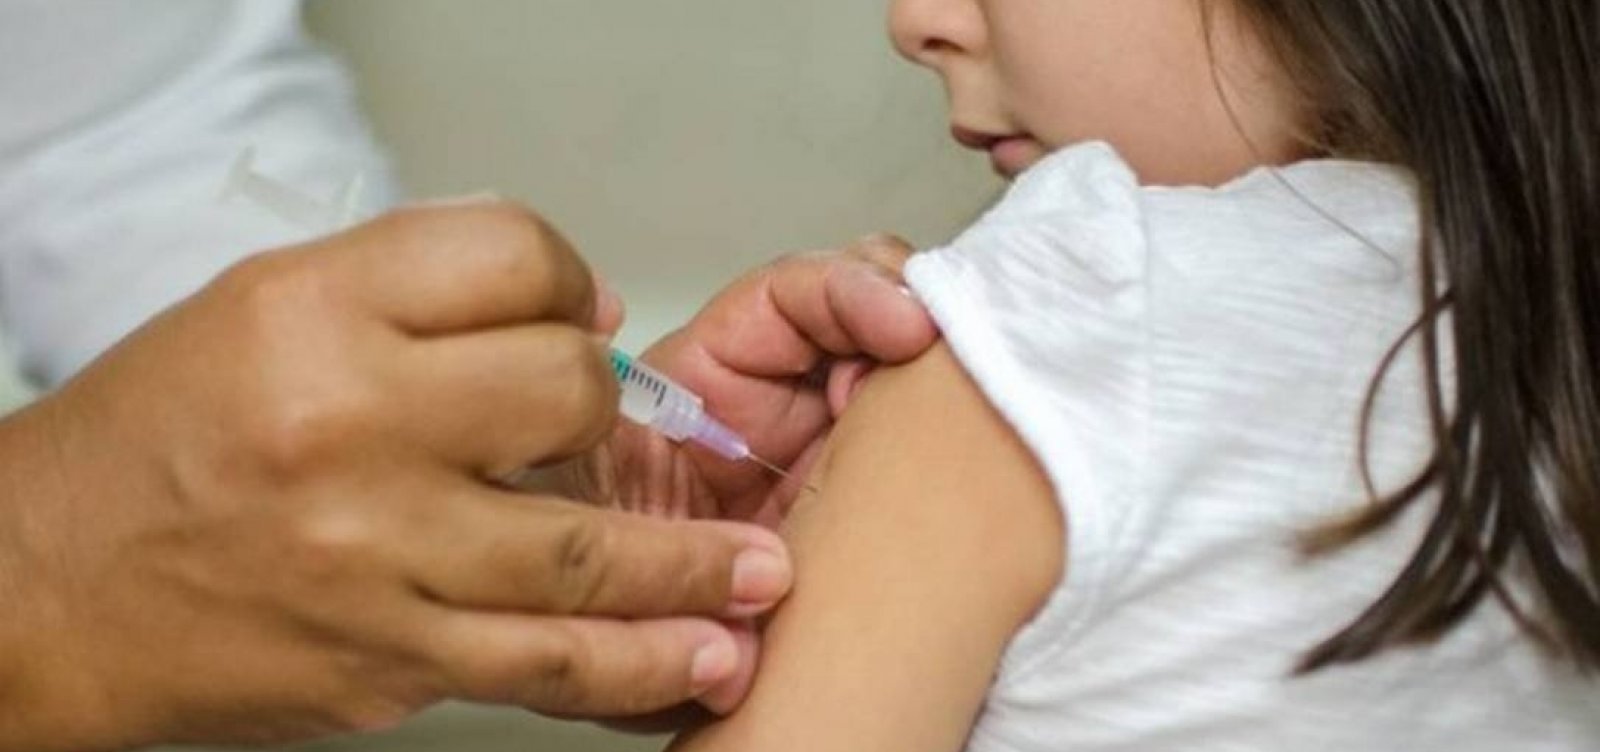 Crianças recebem vacina errada contra a Covid-19 em Pernambuco